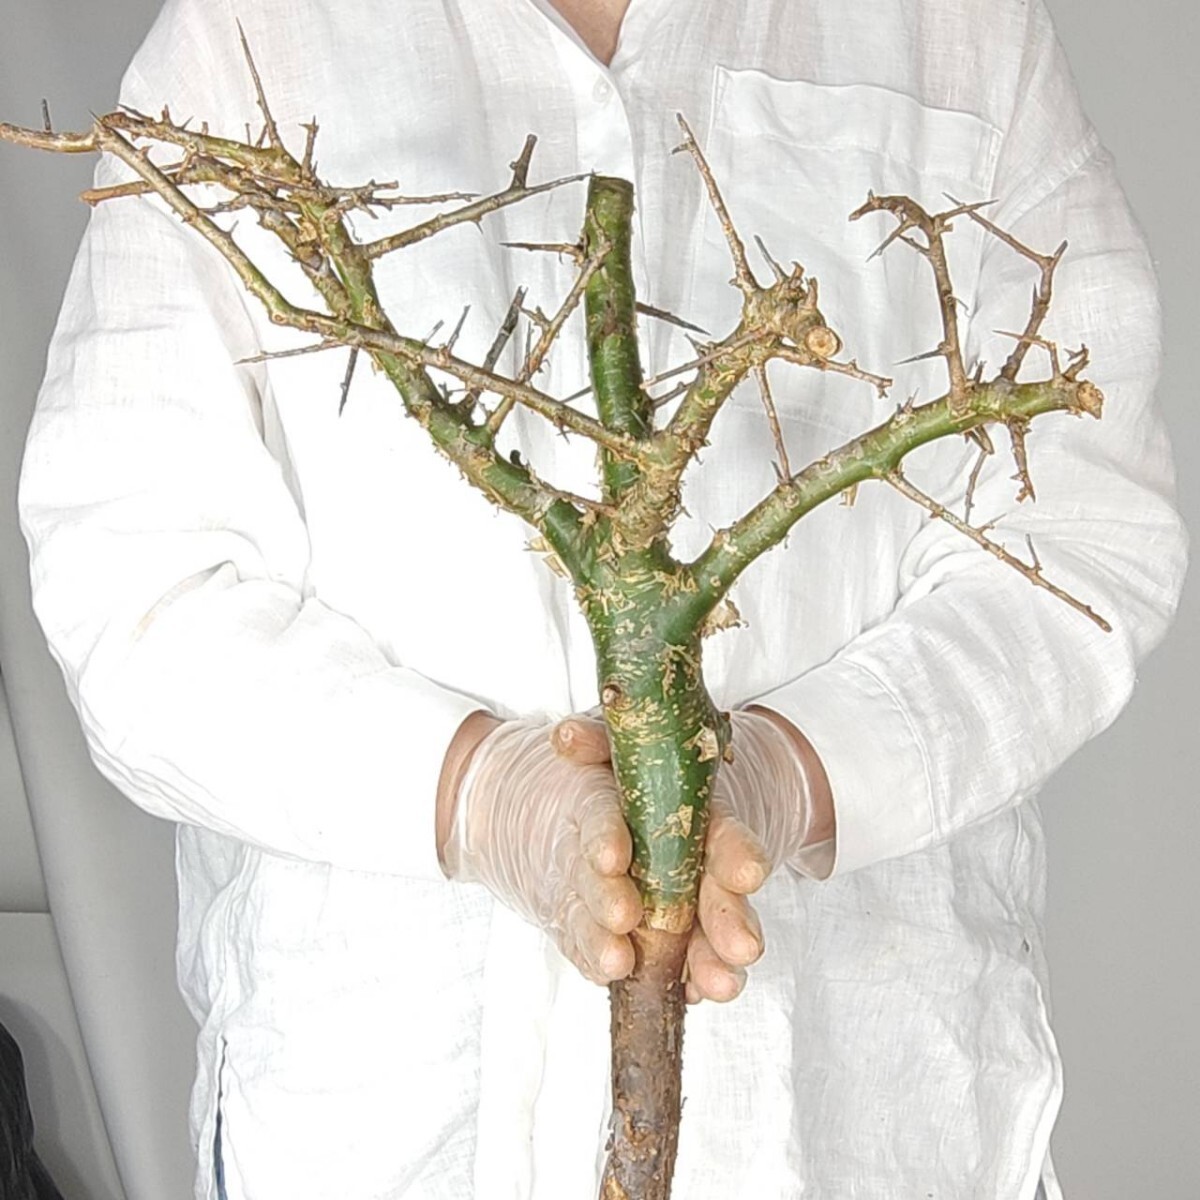 大 ミルラ V024 コミフォラ・ミルラ 塊根植物 観葉植物 未発根 多肉植物 灌木 パキプス グラキリス 盆栽 アガベ コーデックスの画像1